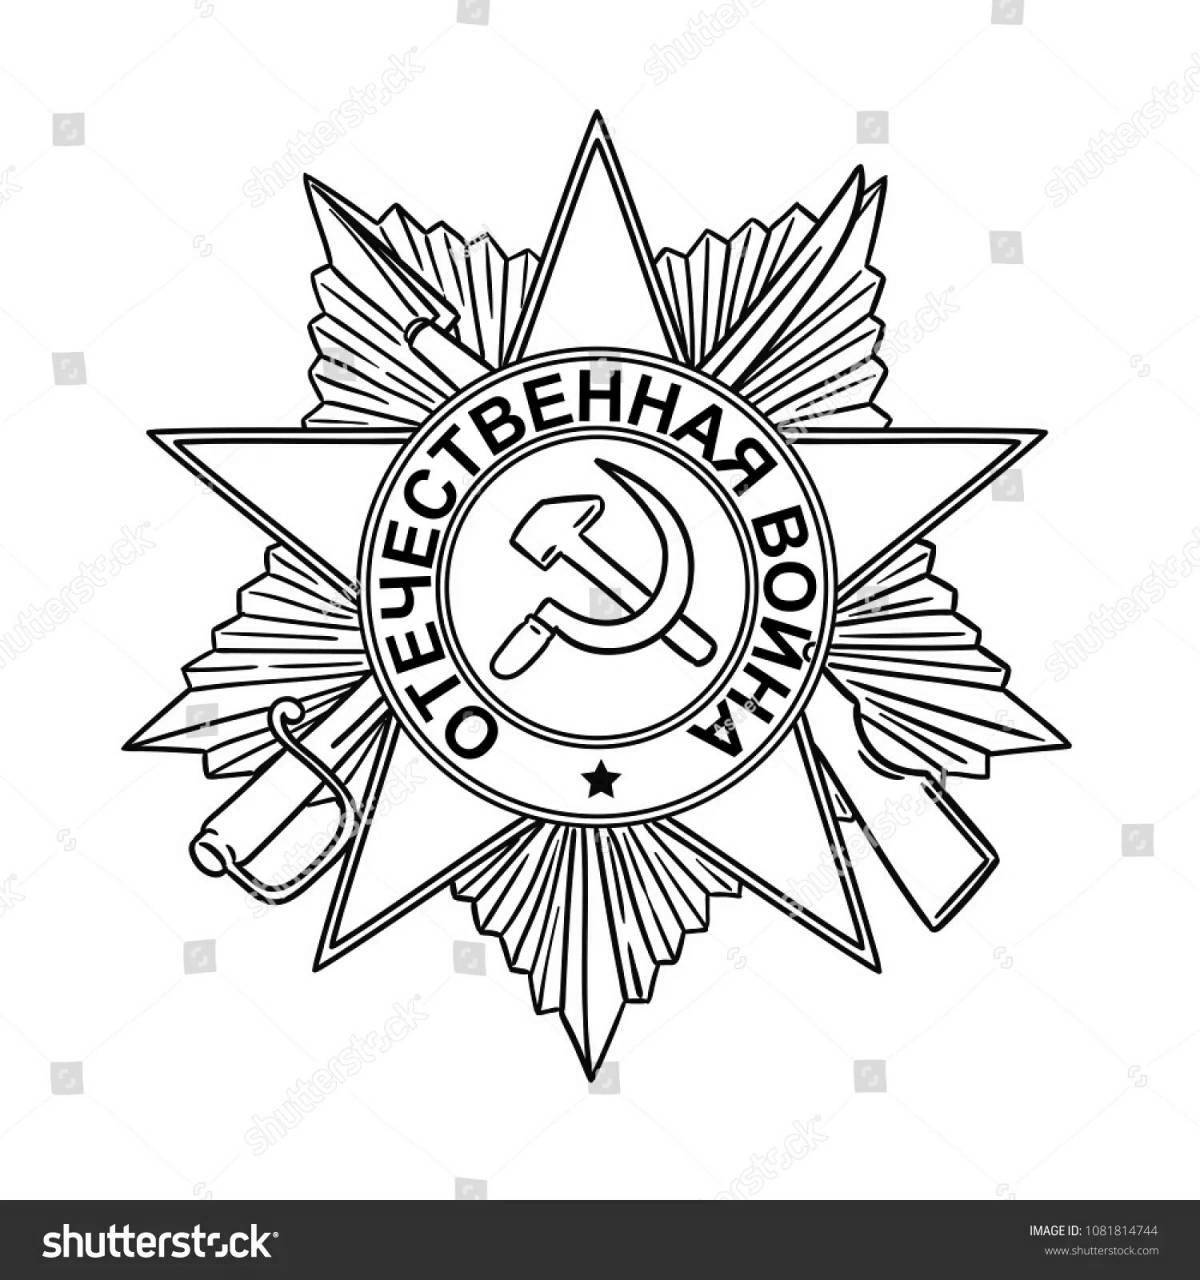 Элегантная раскраска звезда героя советского союза